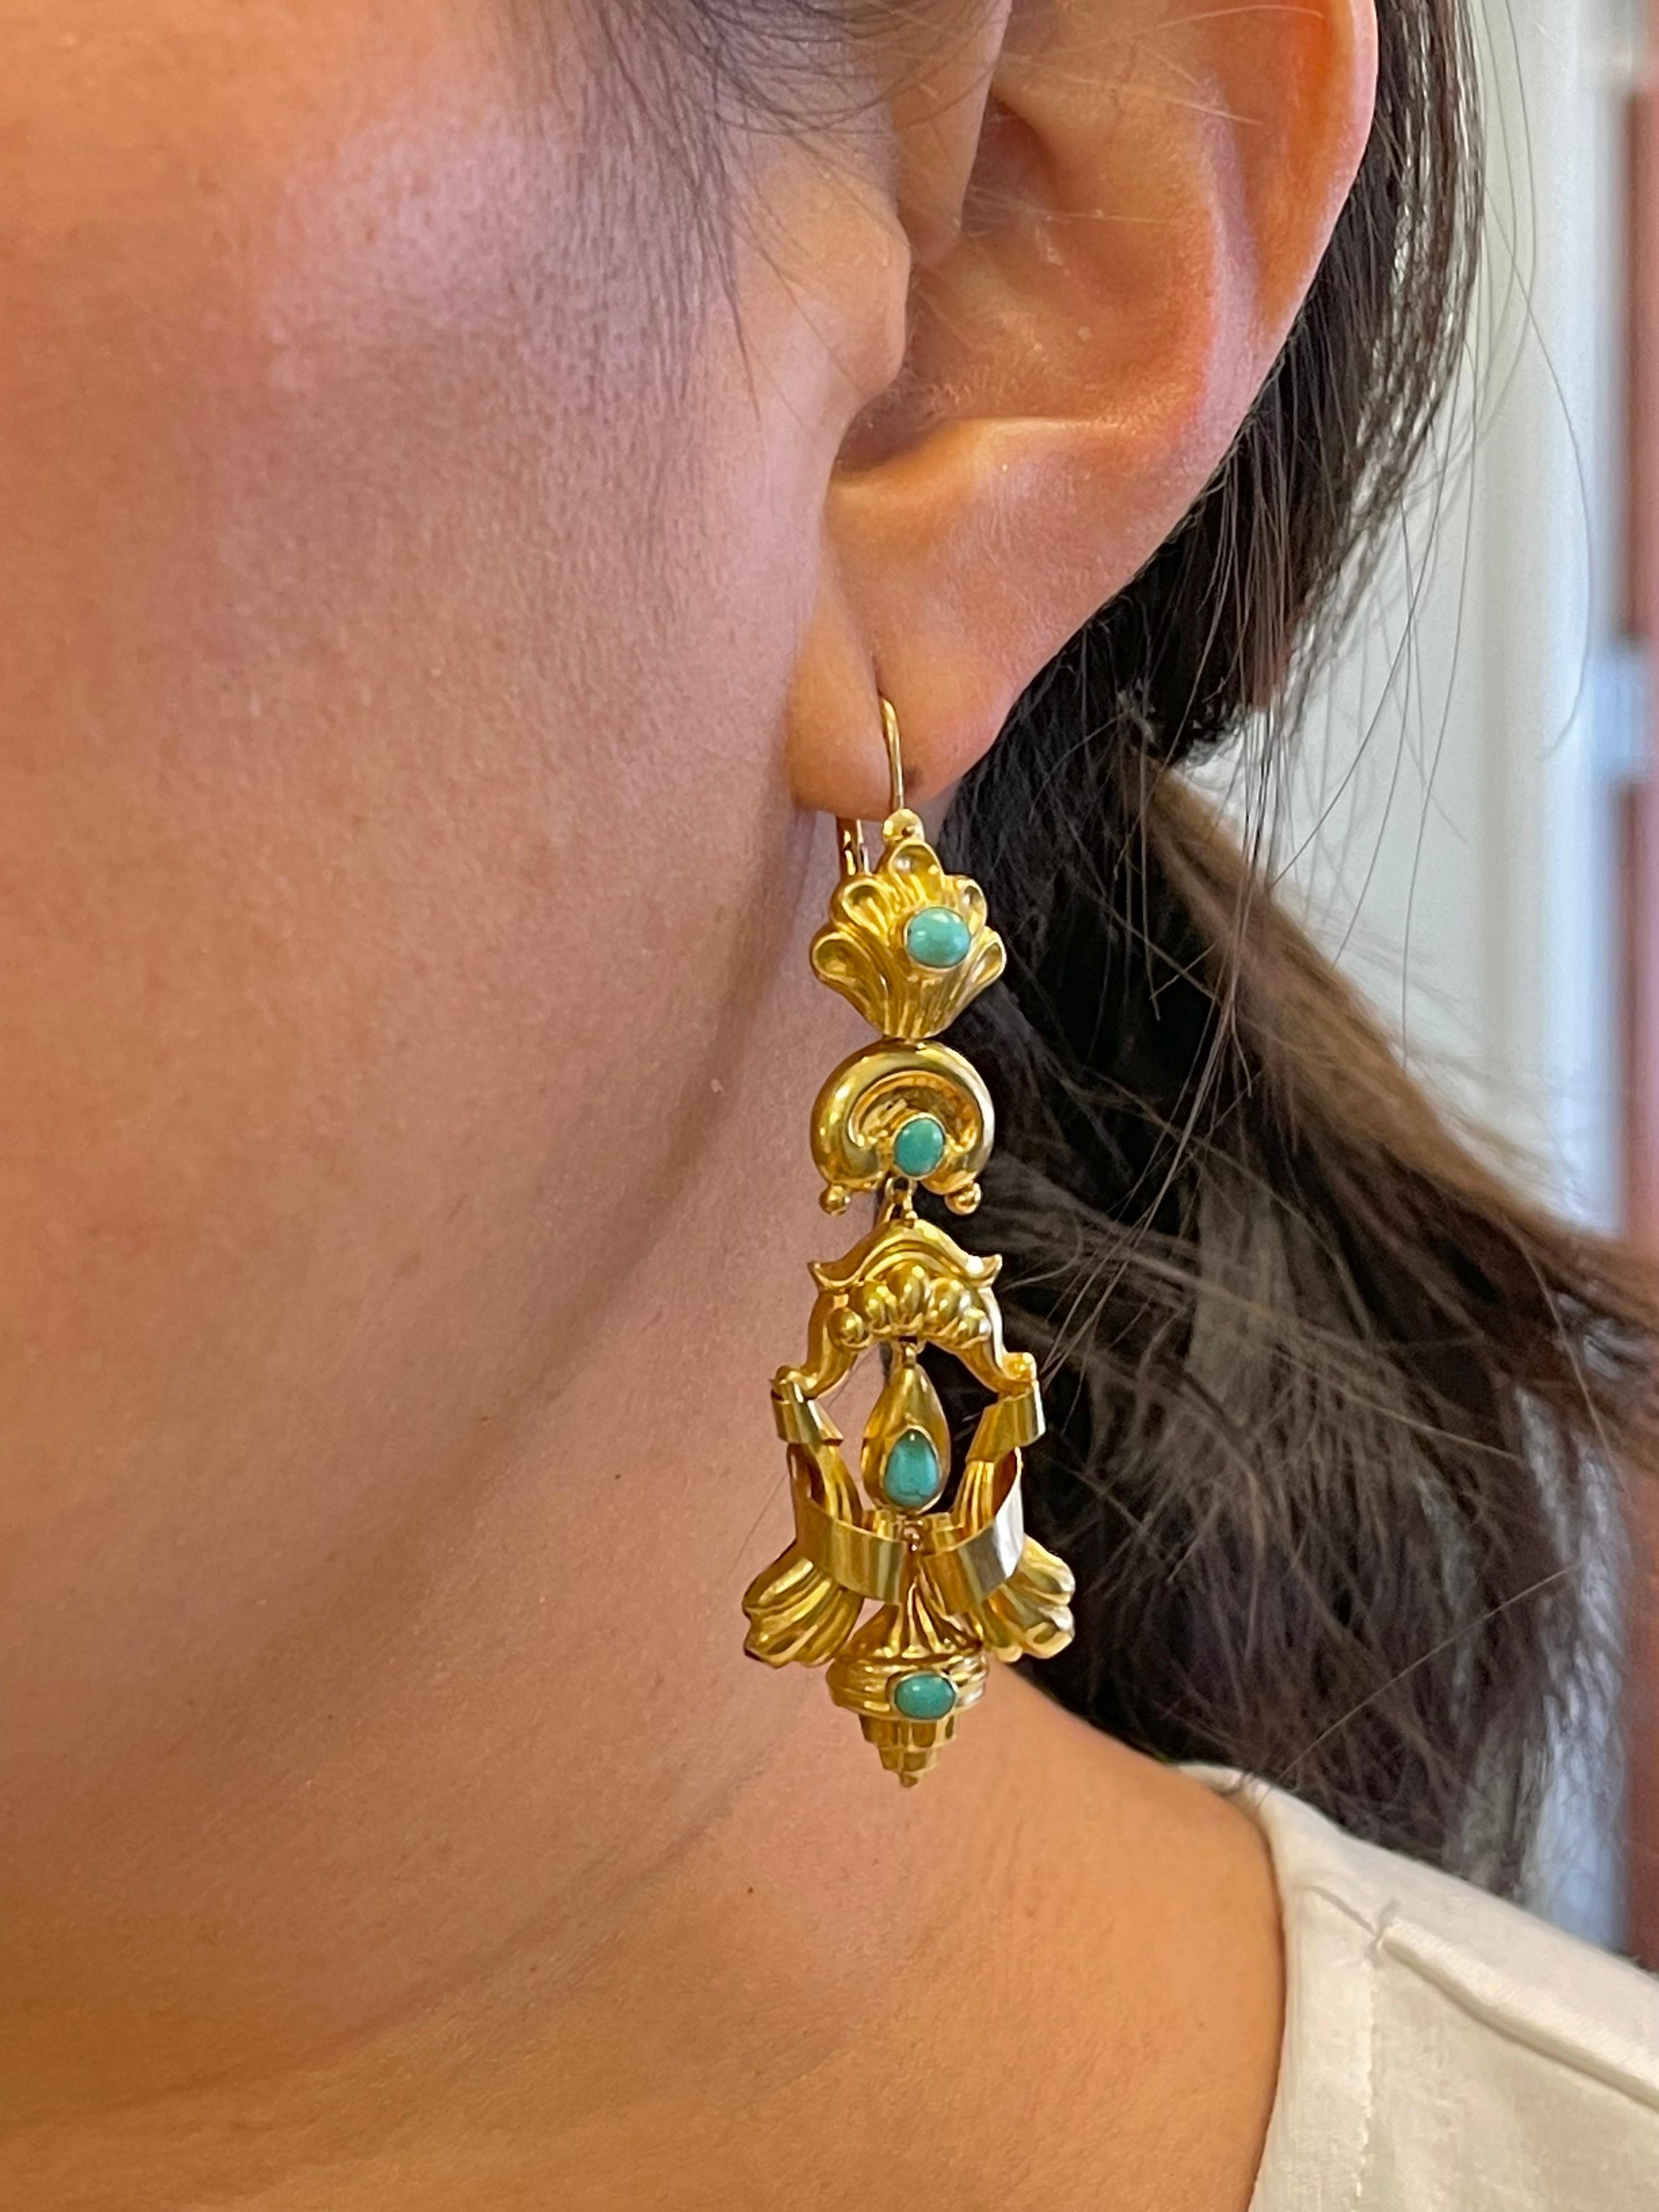 15 earrings